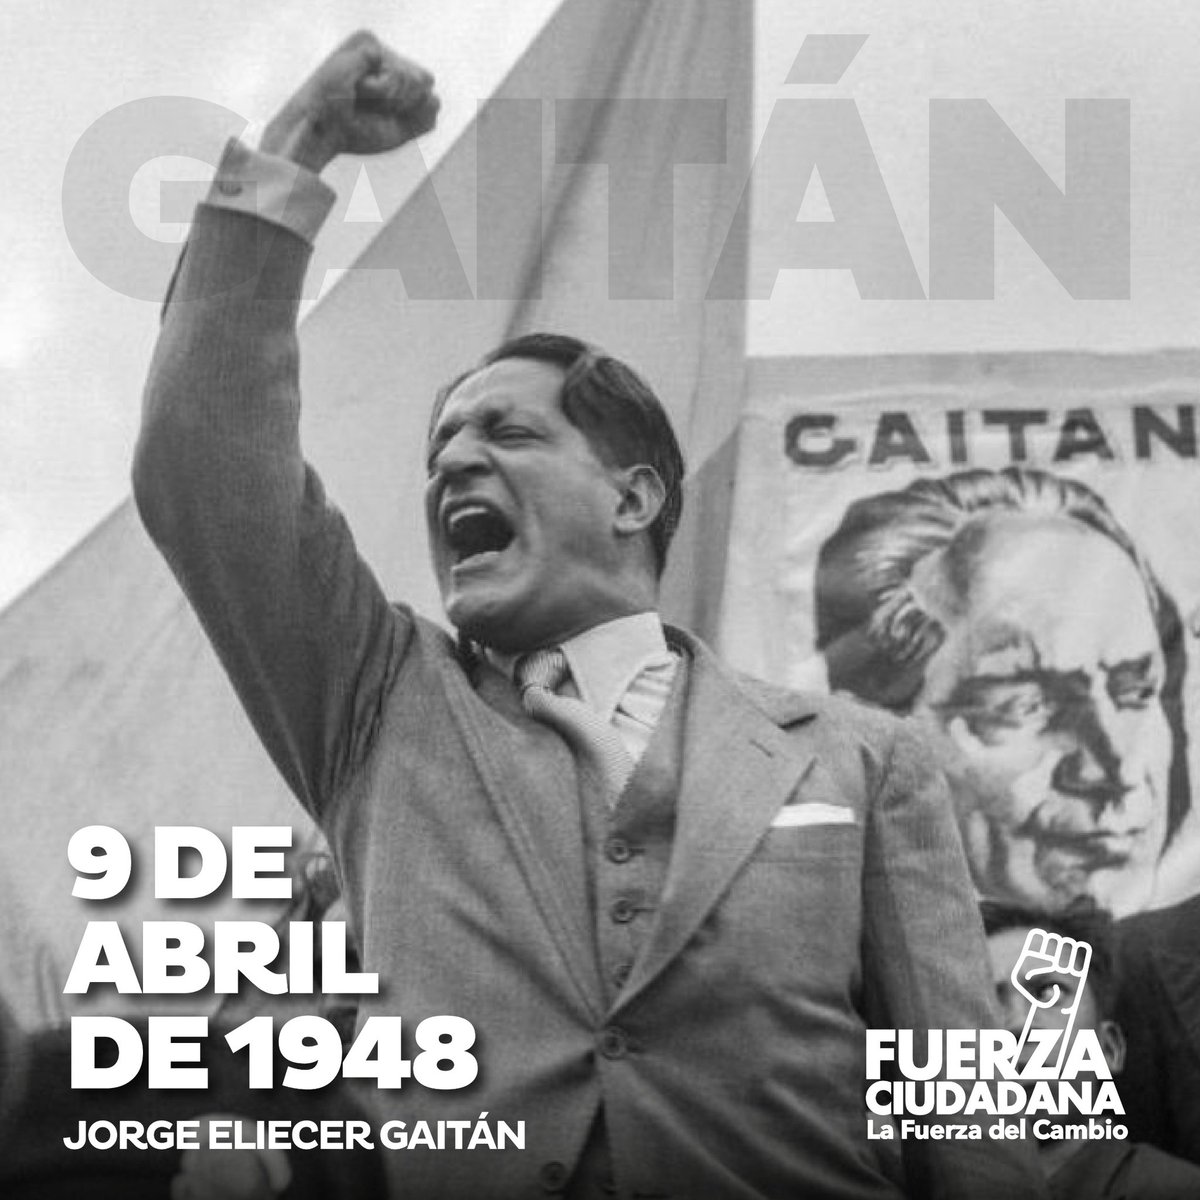 Un día como hoy, fue asesinado Jorge Eliécer Gaitán, magnicidio fraguado por la oligarquía colombiana de extrema derecha, que partió en dos la historia de Colombia en el siglo XX. El caudillo liberal progresista era esperanza de millones de pobres y humildes. Gaitán ha inspirado…